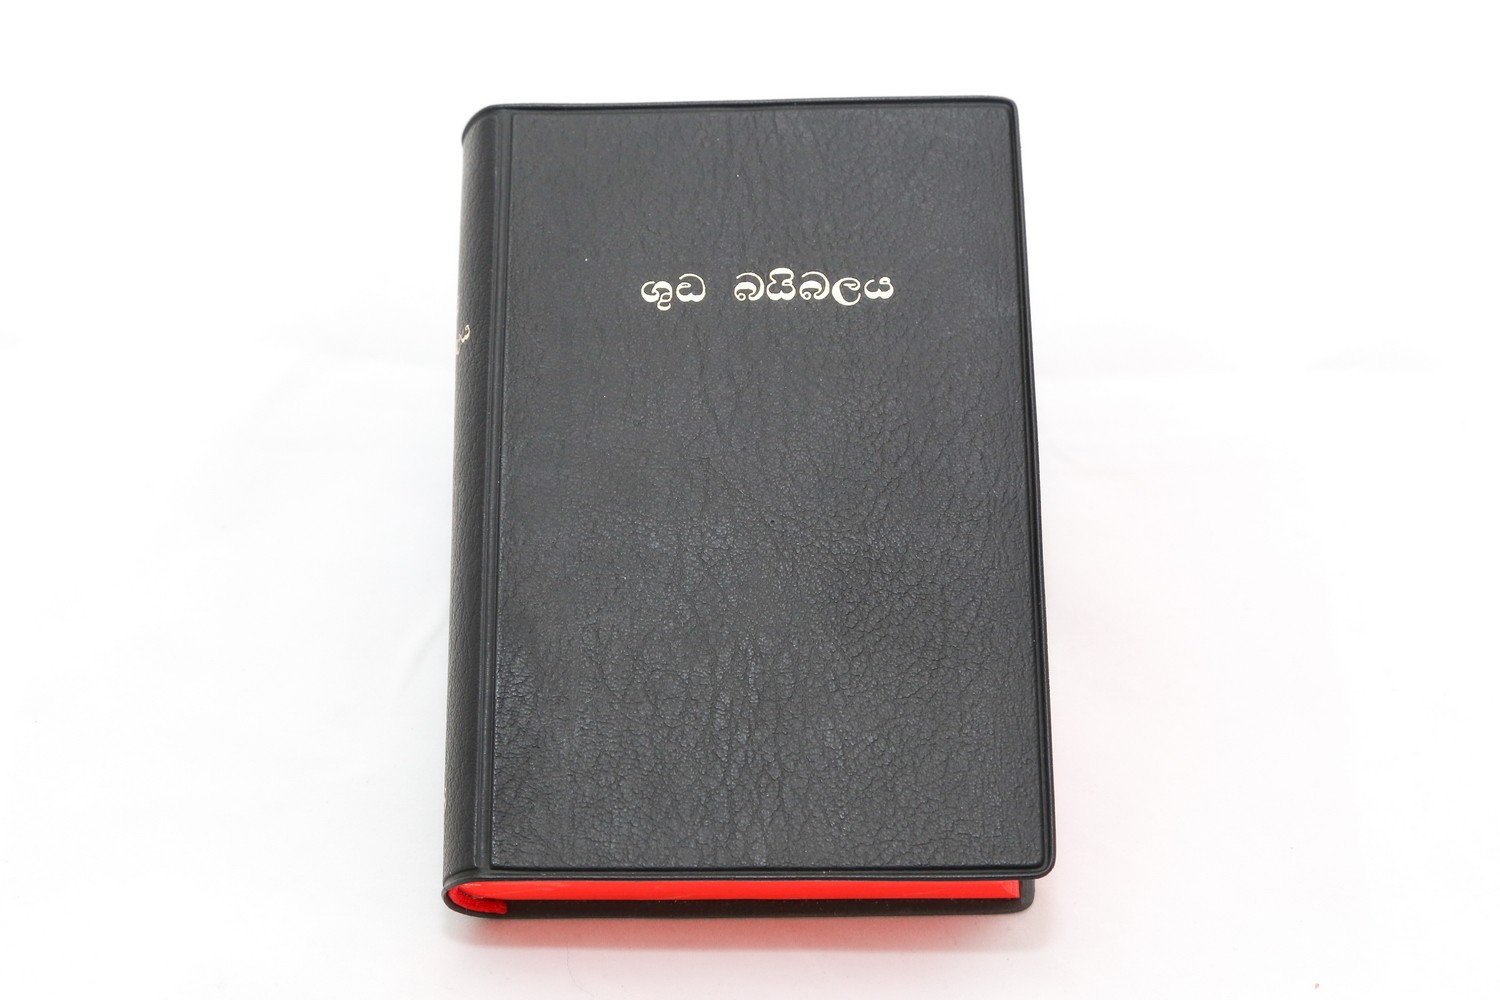 bible in sinhala language